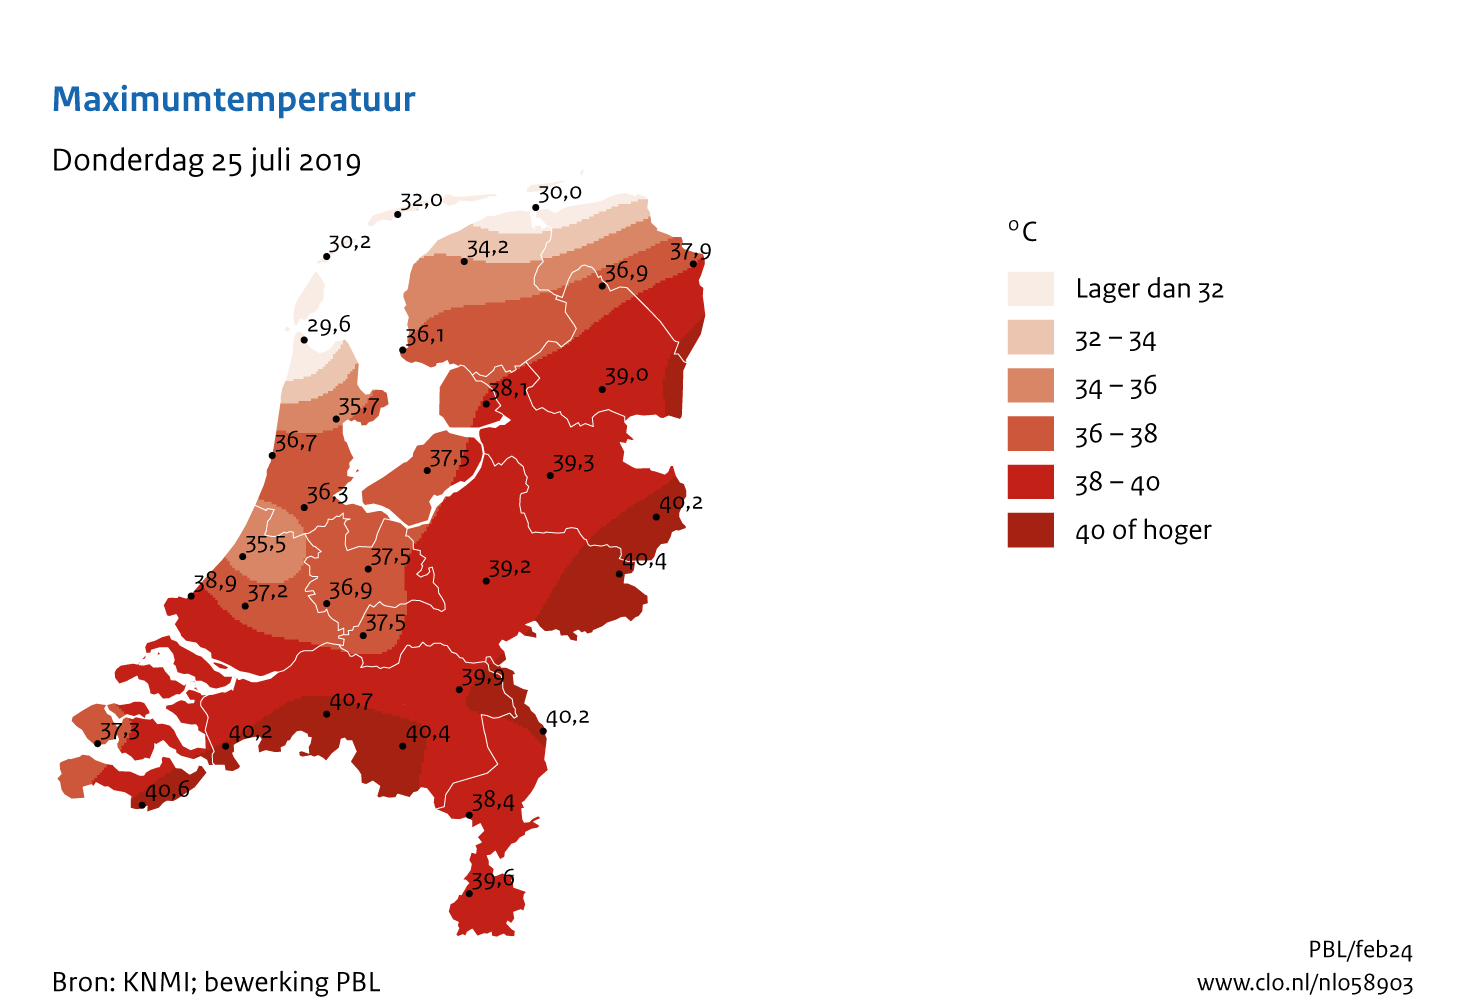 Figuur Maximumtemperatuur Nederland. In de rest van de tekst wordt deze figuur uitgebreider uitgelegd.